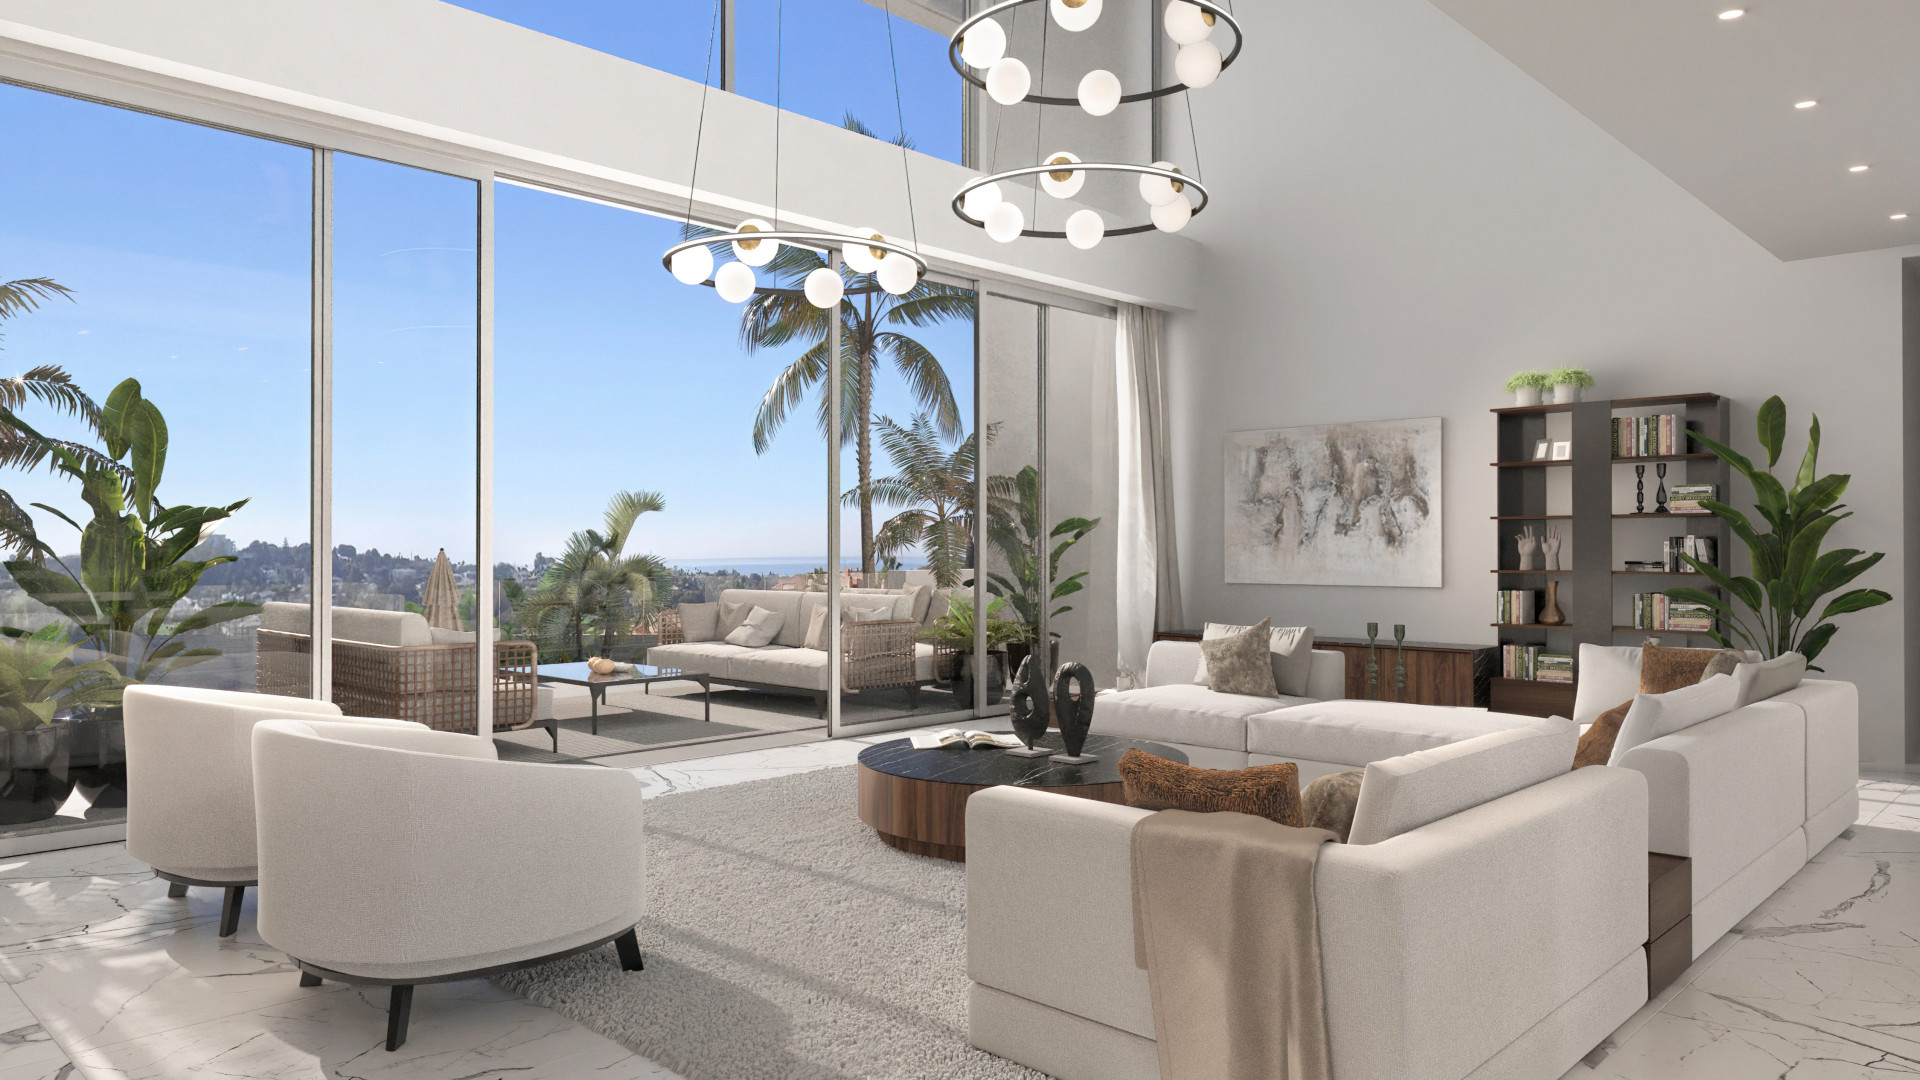 Brand new contemporary luxury villa in Paraiso Alto